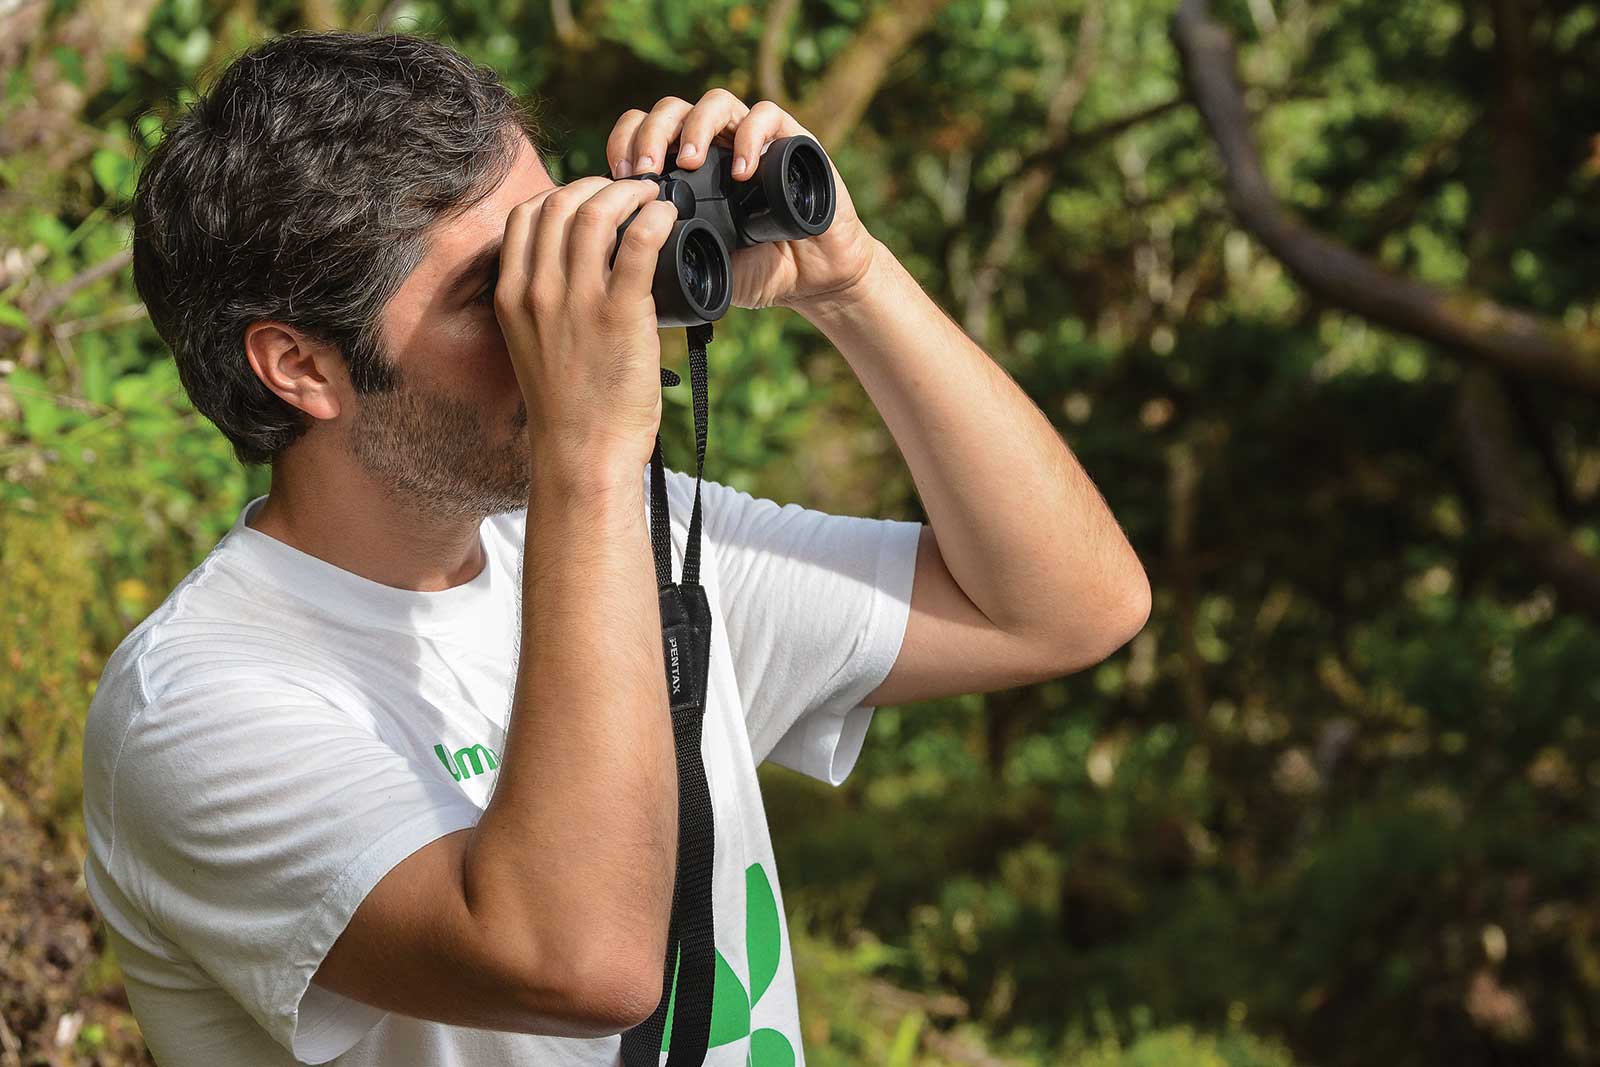 Excursion Observation des oiseaux dans leurs habitats naturels sur l'île de Pico